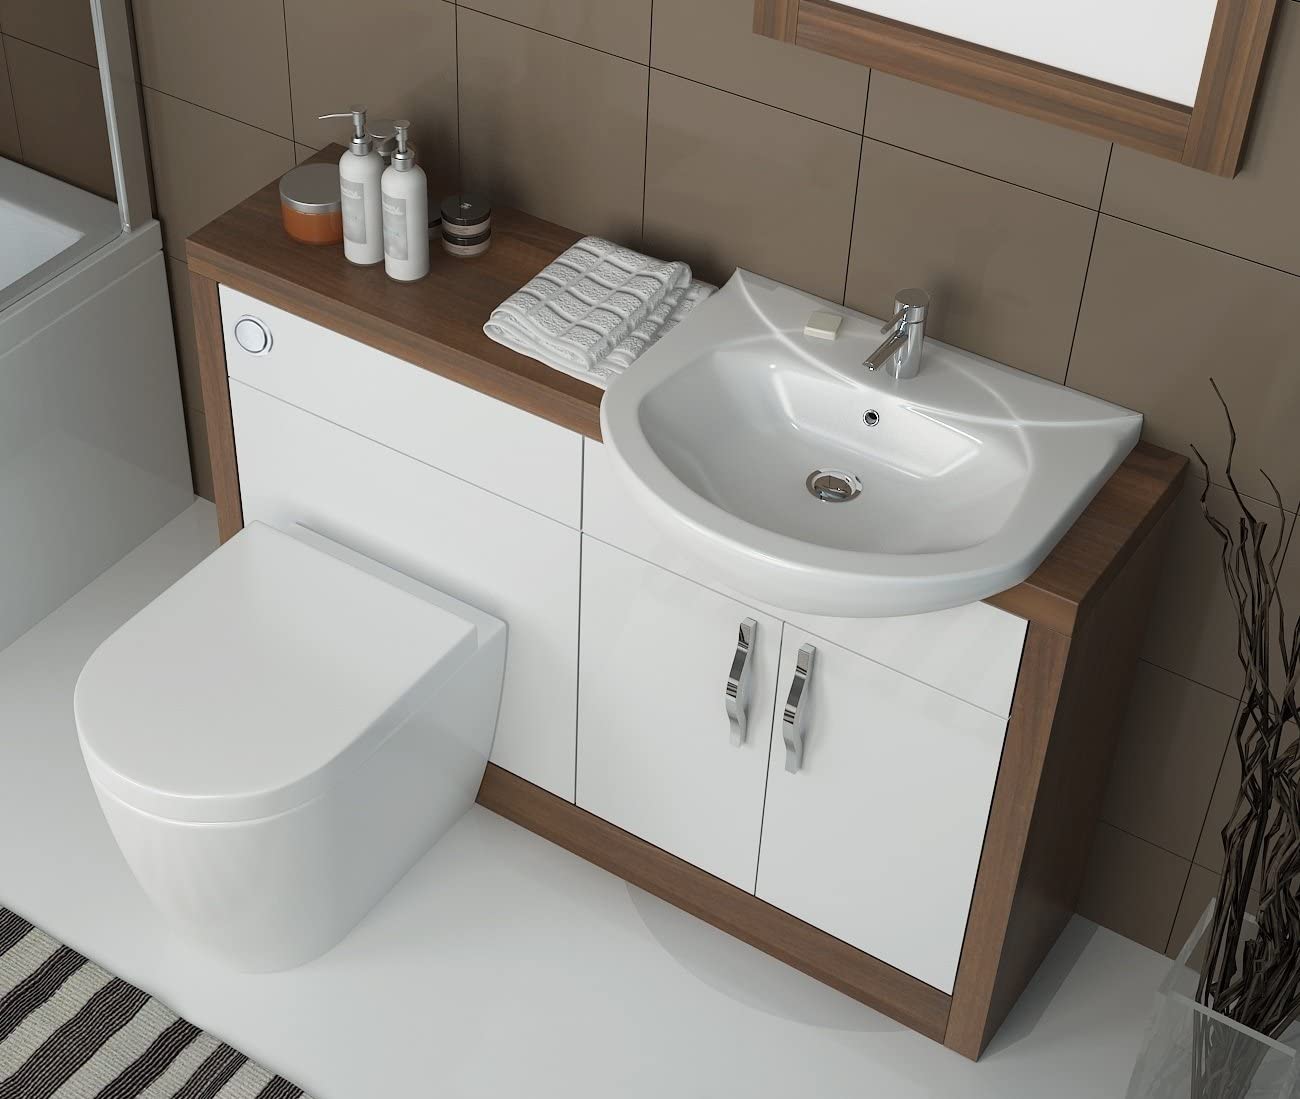 Không chỉ dừng lại ở thiết kế bồn rửa và toilet, các NTK còn bổ sung tủ lưu trữ cho phép tăng không gian thu xếp đồ đạc ở khu vực phòng tắm gọn gàng.